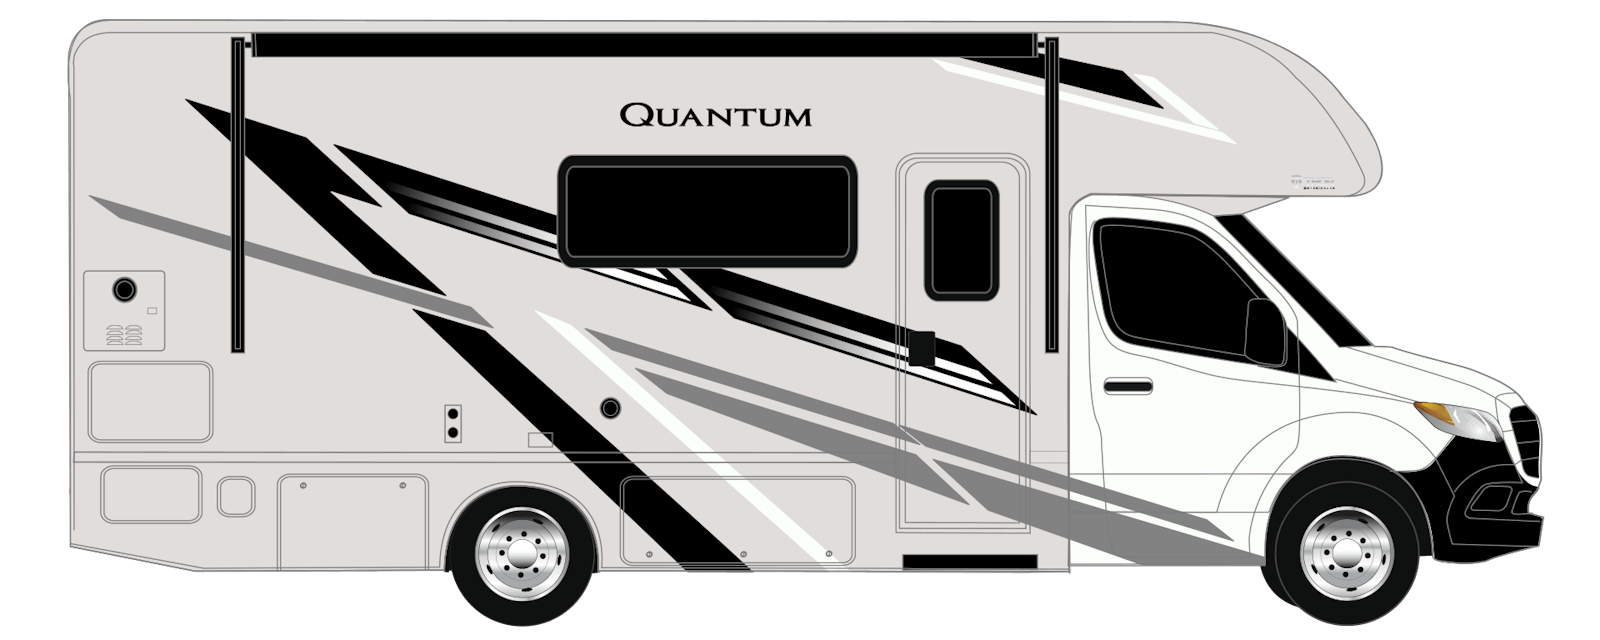 Quantum Sprinter standard graphics